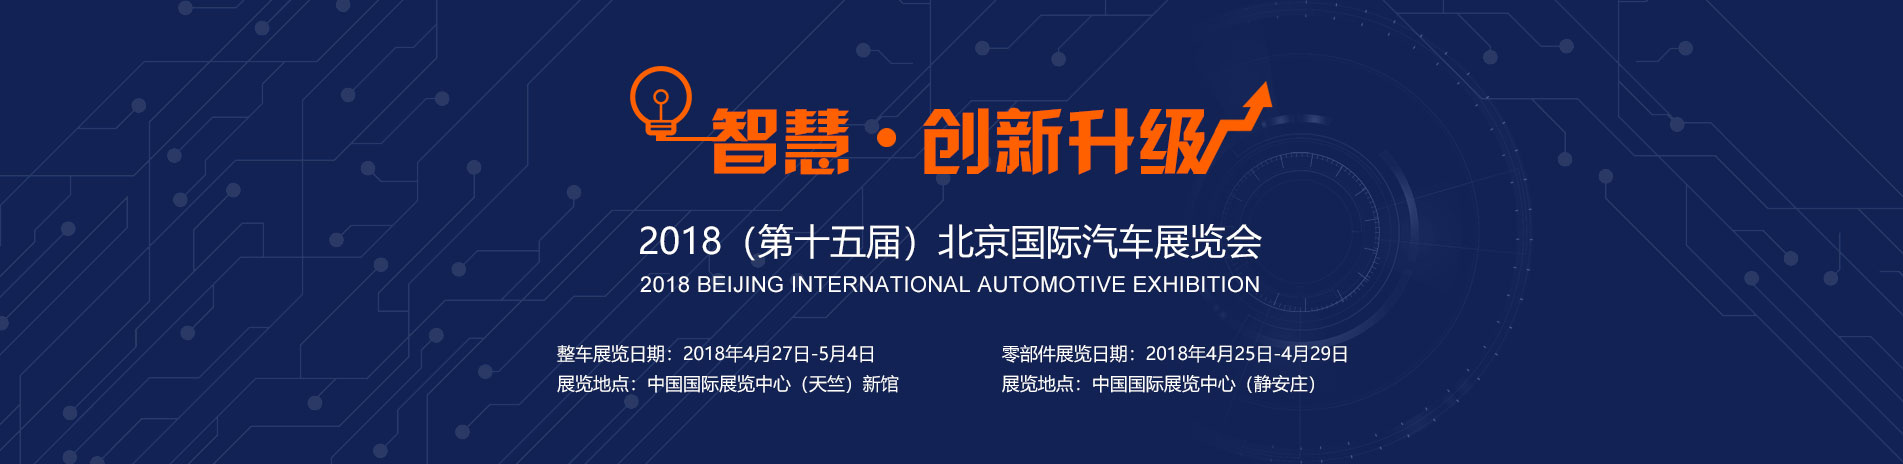 南京依维柯展台 智慧 · 创新升级 2018北京国际汽车展览会